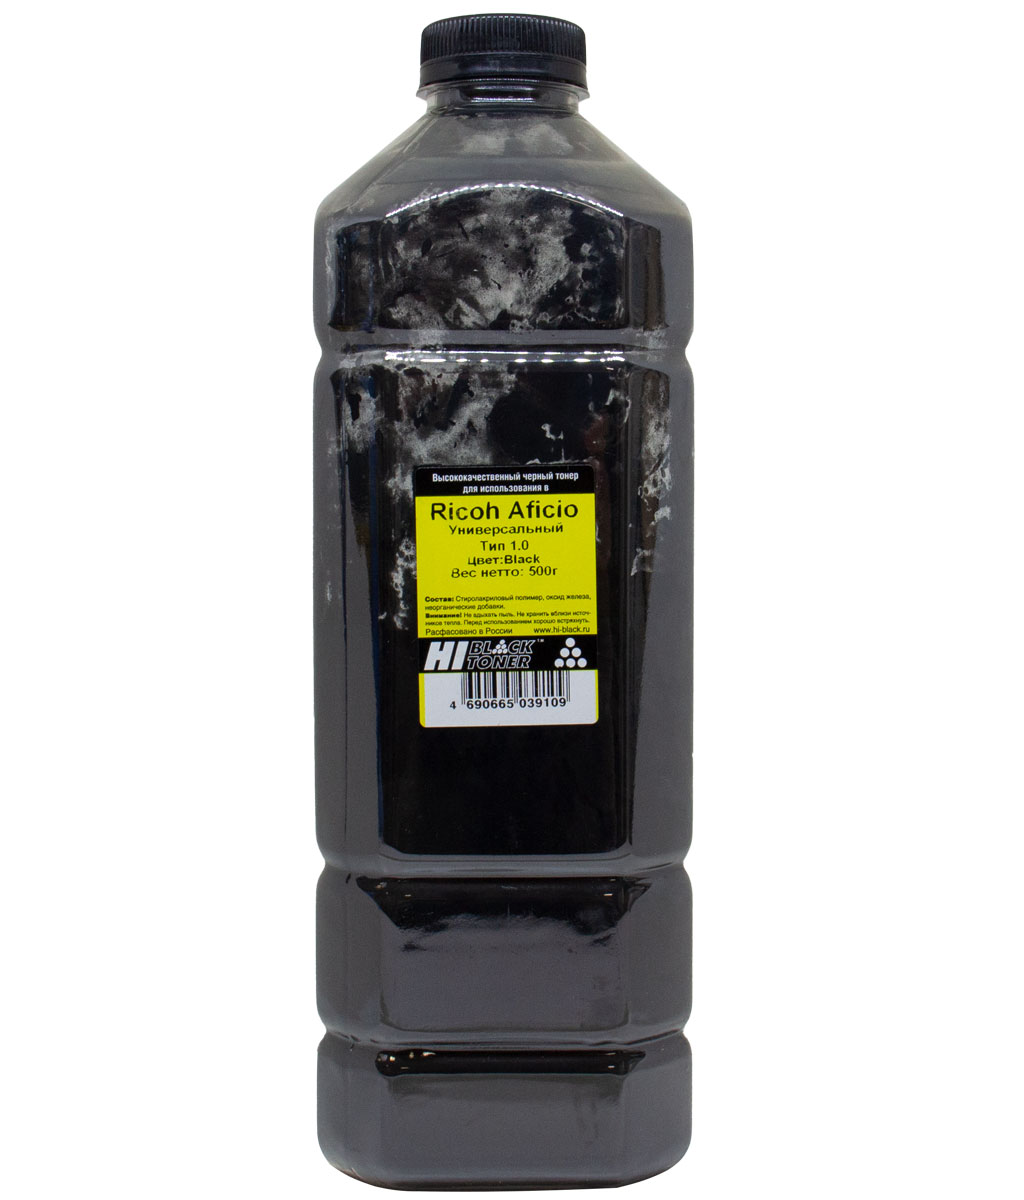 Тонер совместимый Тонер Hi-Black Тип 1.0, бутыль 500 г, черный, совместимый для Ricoh Aficio SP-C220/221/222/231/232/242/250/261DNw/311/312/320, Ipsio SP-C241/251/310/320/341/342, универсальный (20111801)